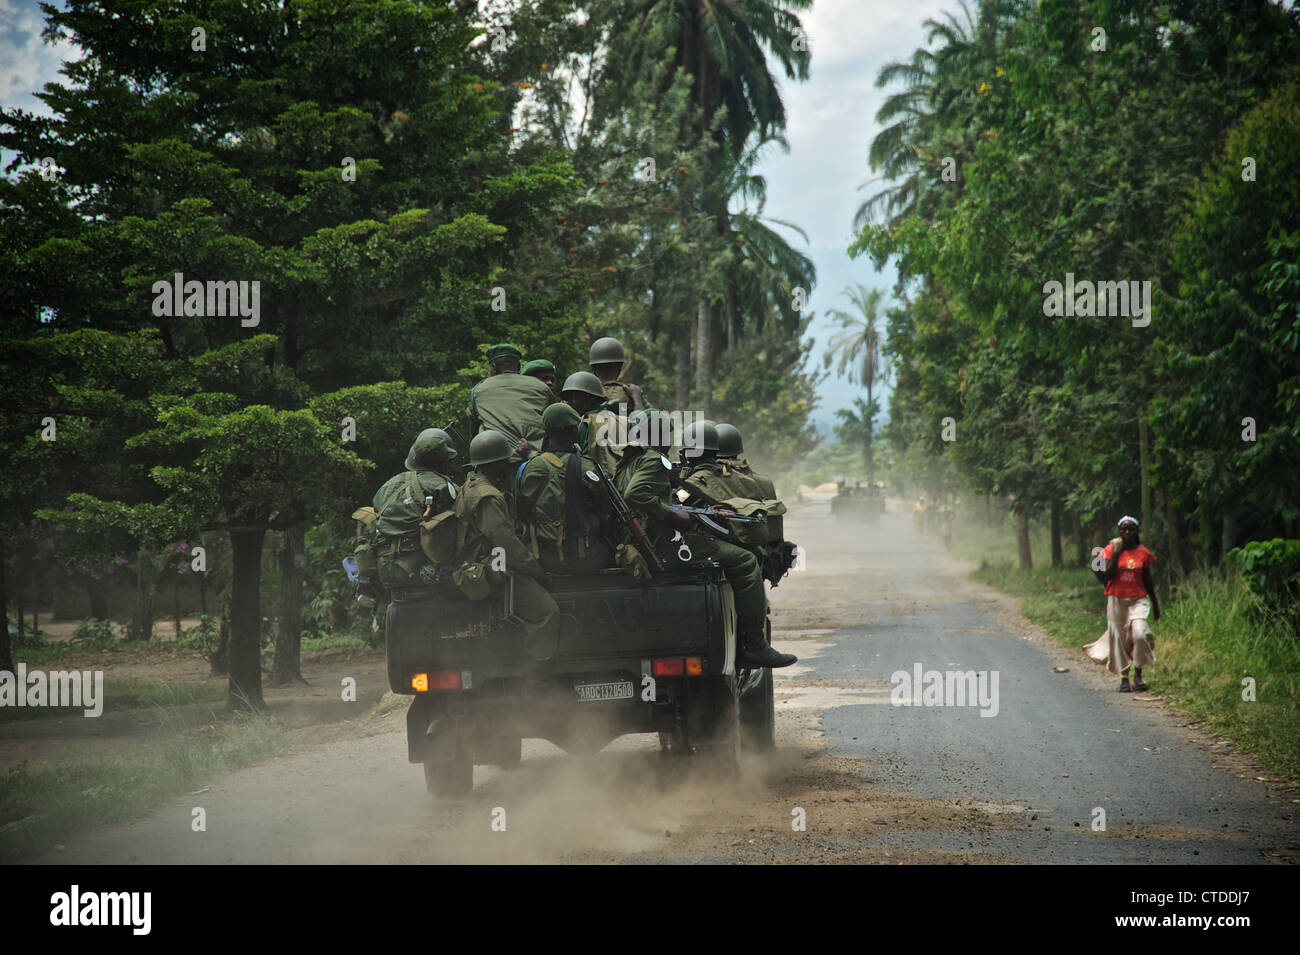 Des soldats congolais, FARDC, Mushake, République démocratique du Congo Banque D'Images